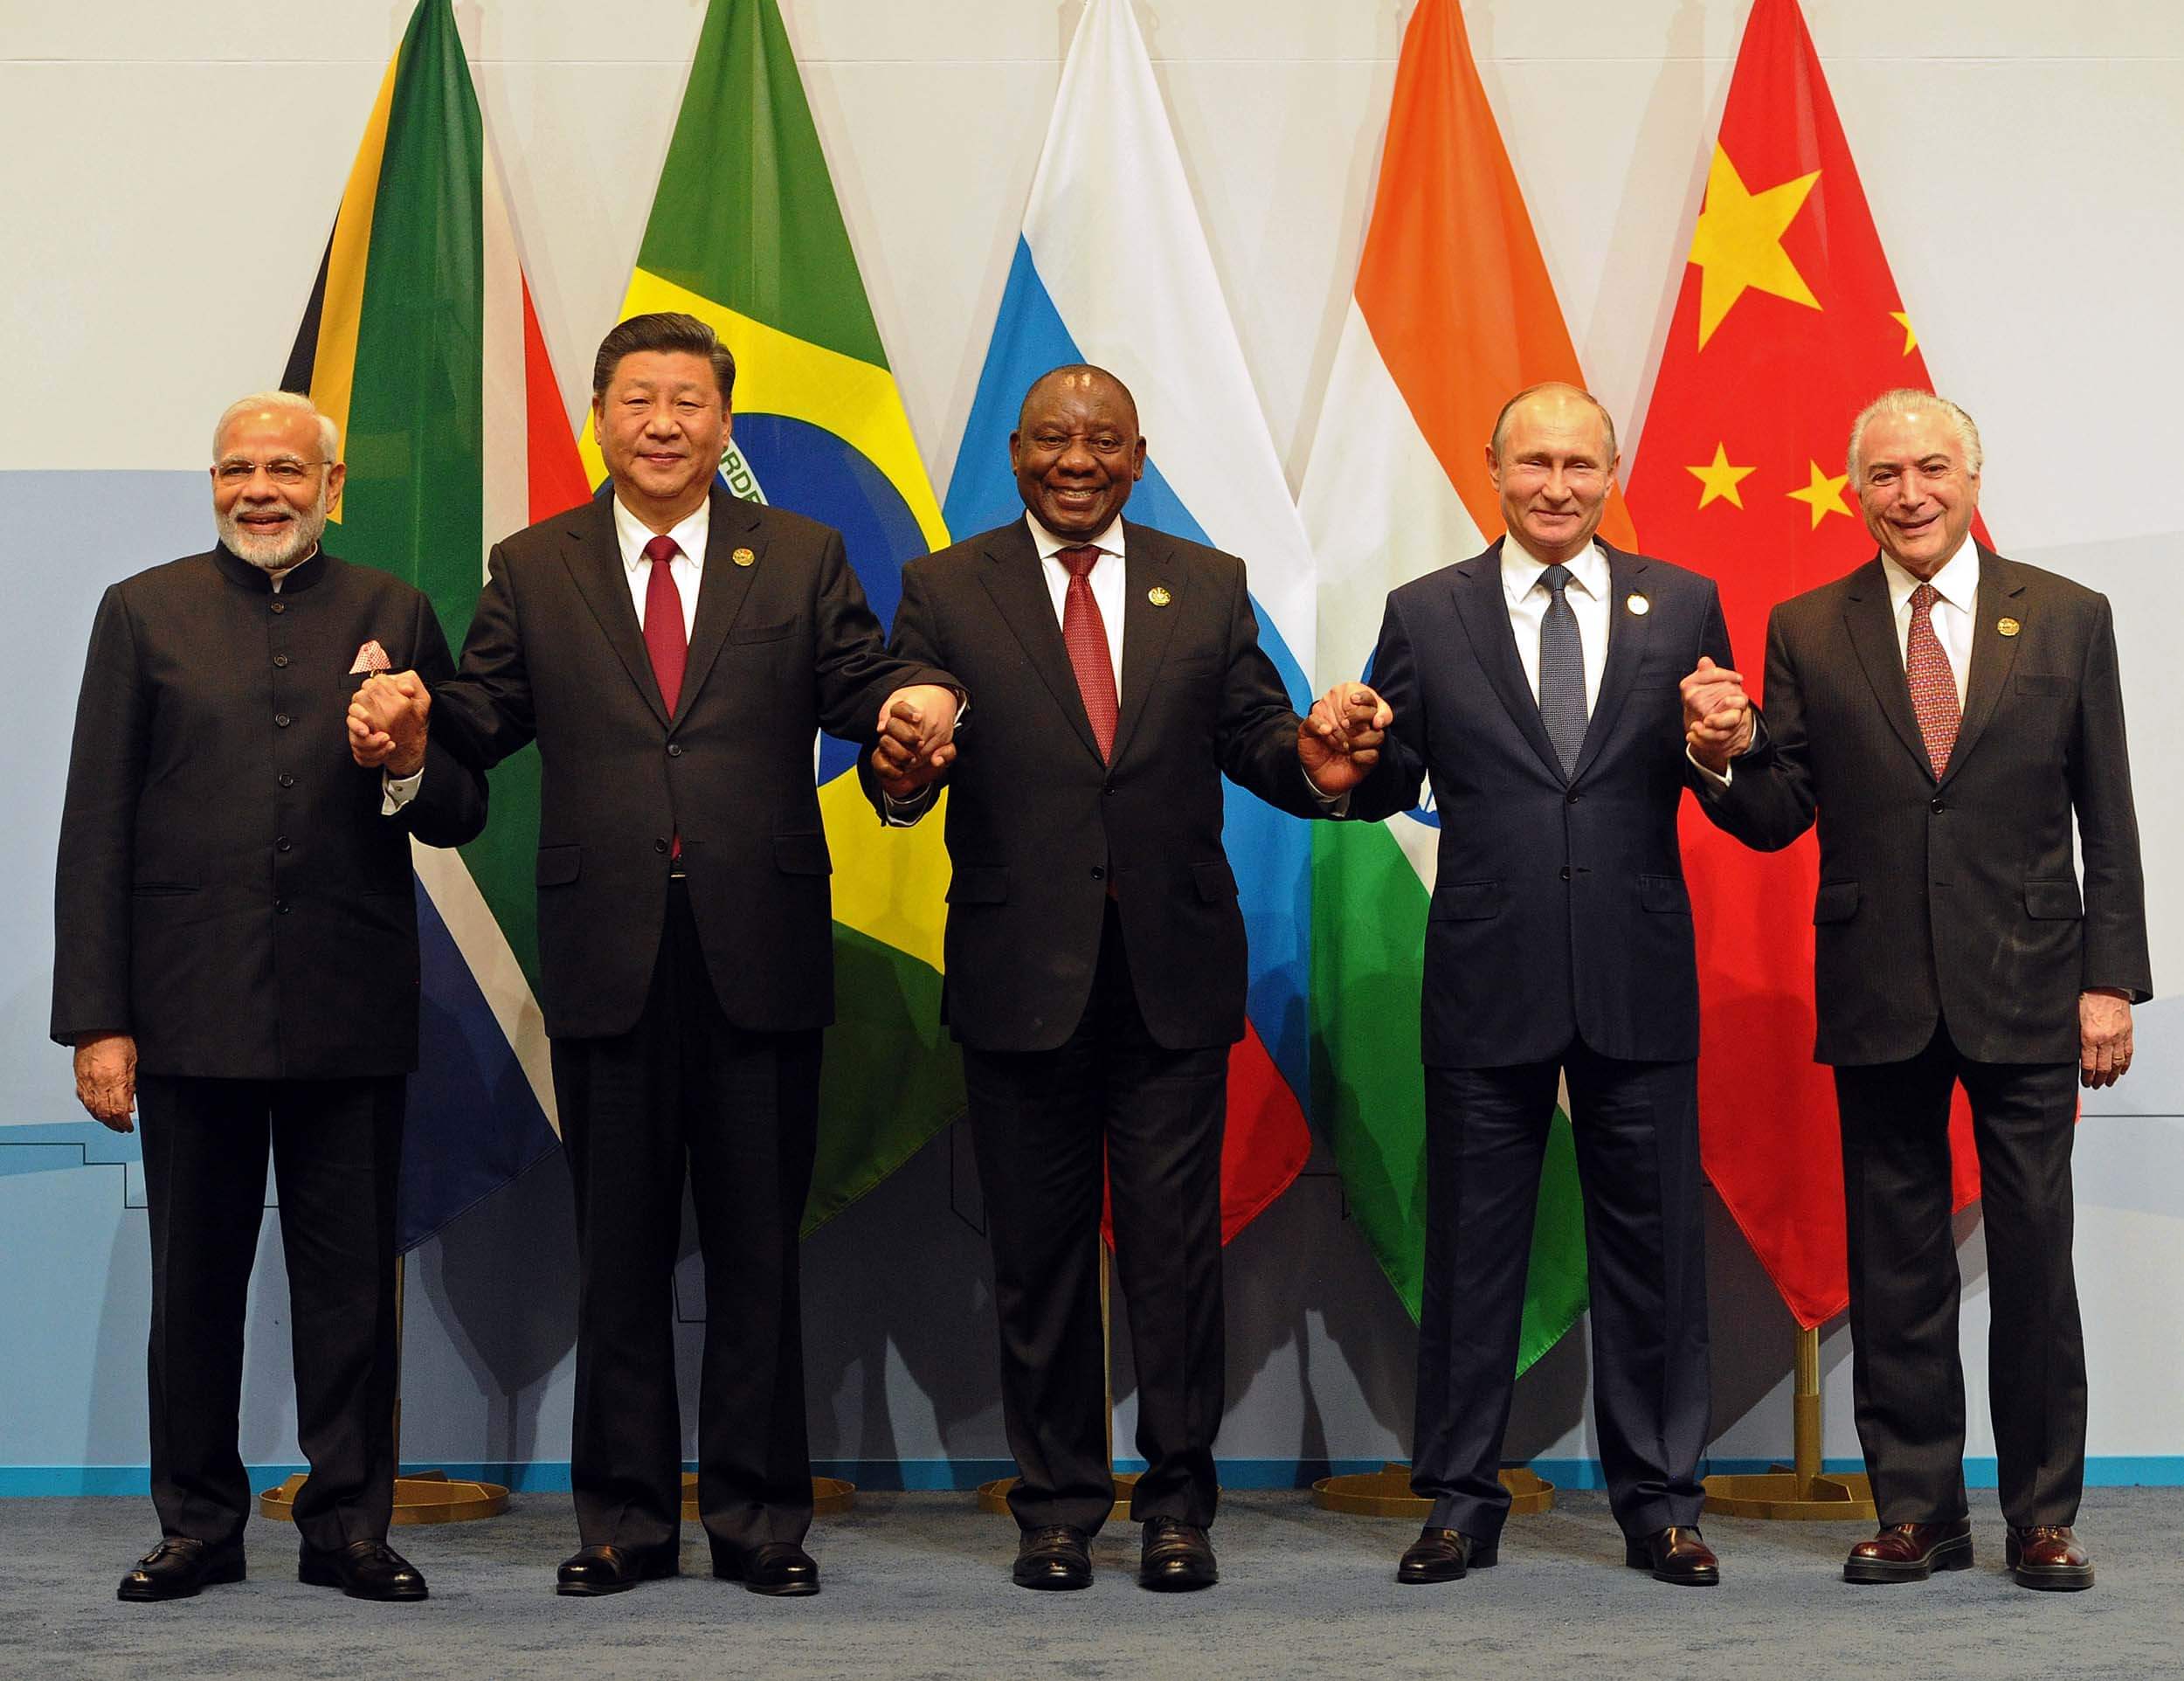 BRICS leader's family photo in SA 2018 10th BRICS summit